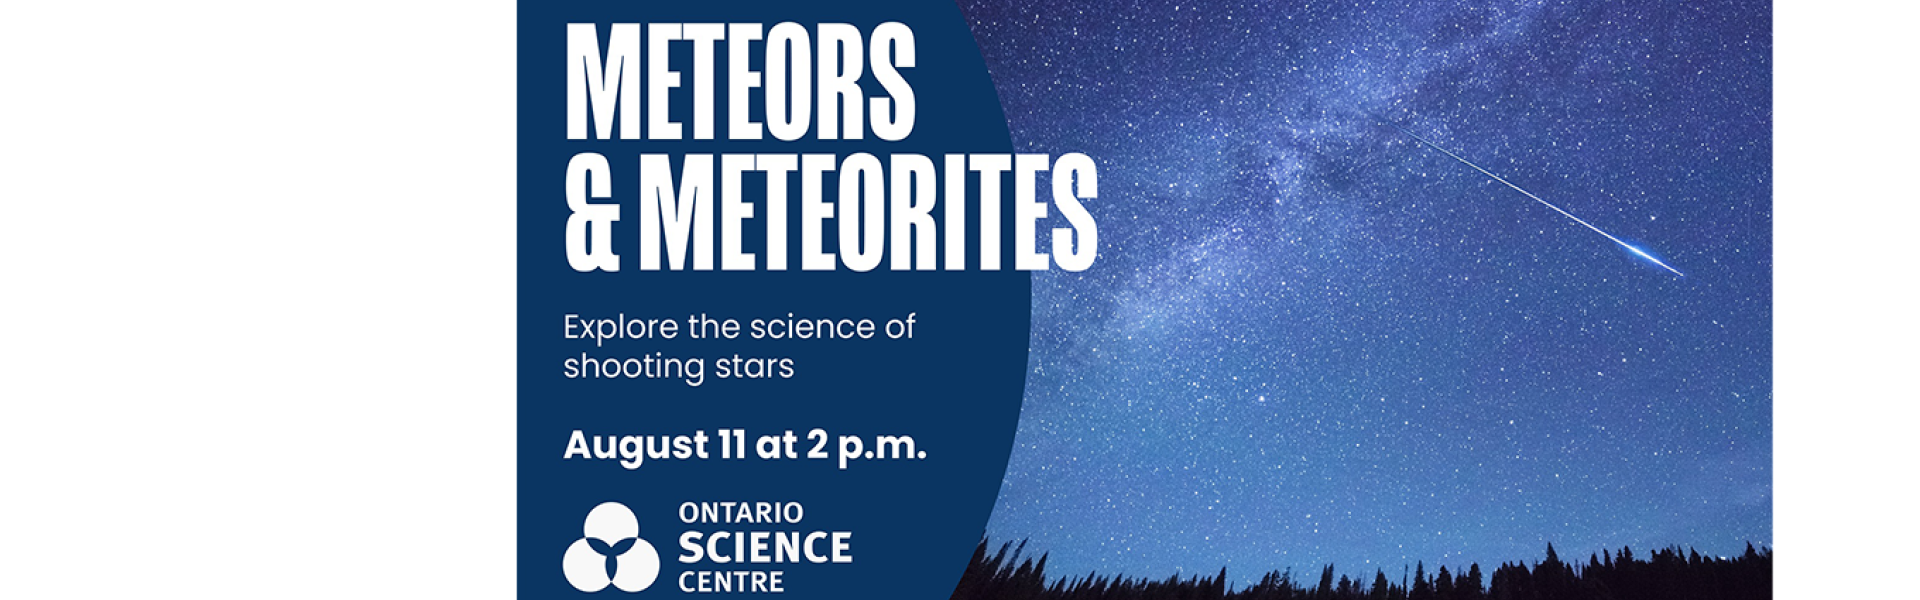 Meteors & Meteorites